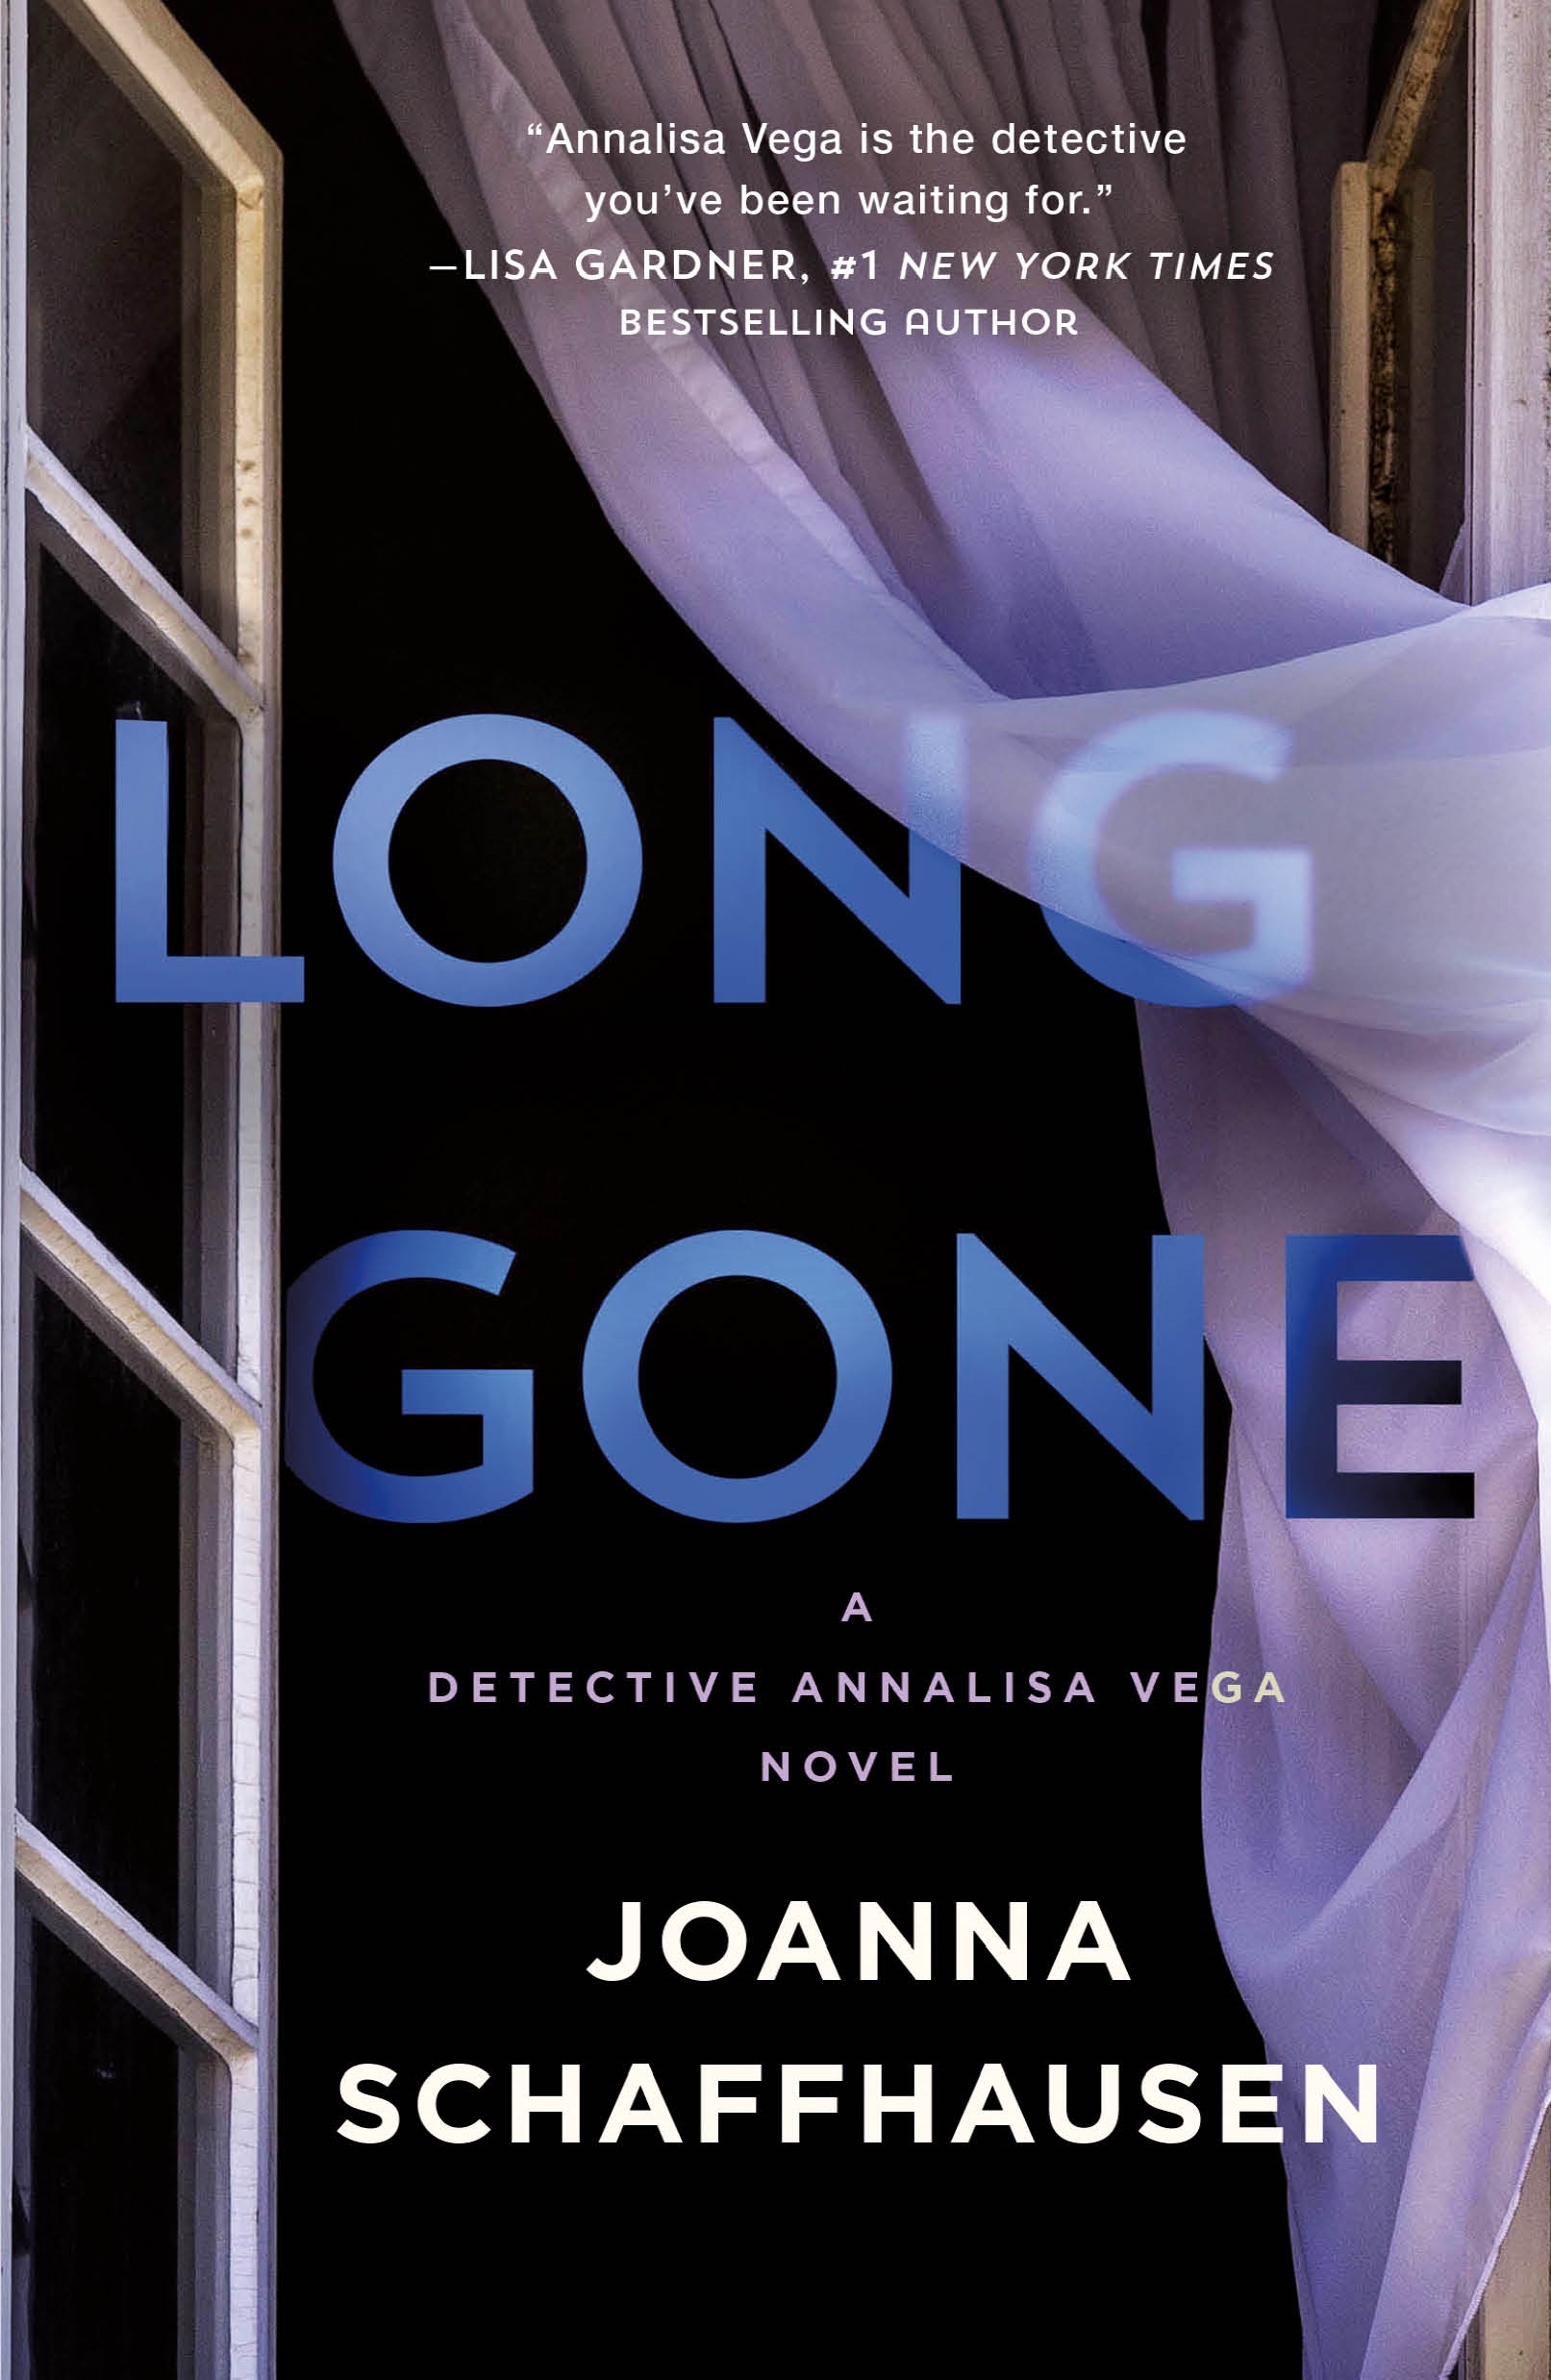 Long Gone A Detective Annalisa Vega Novel cover image